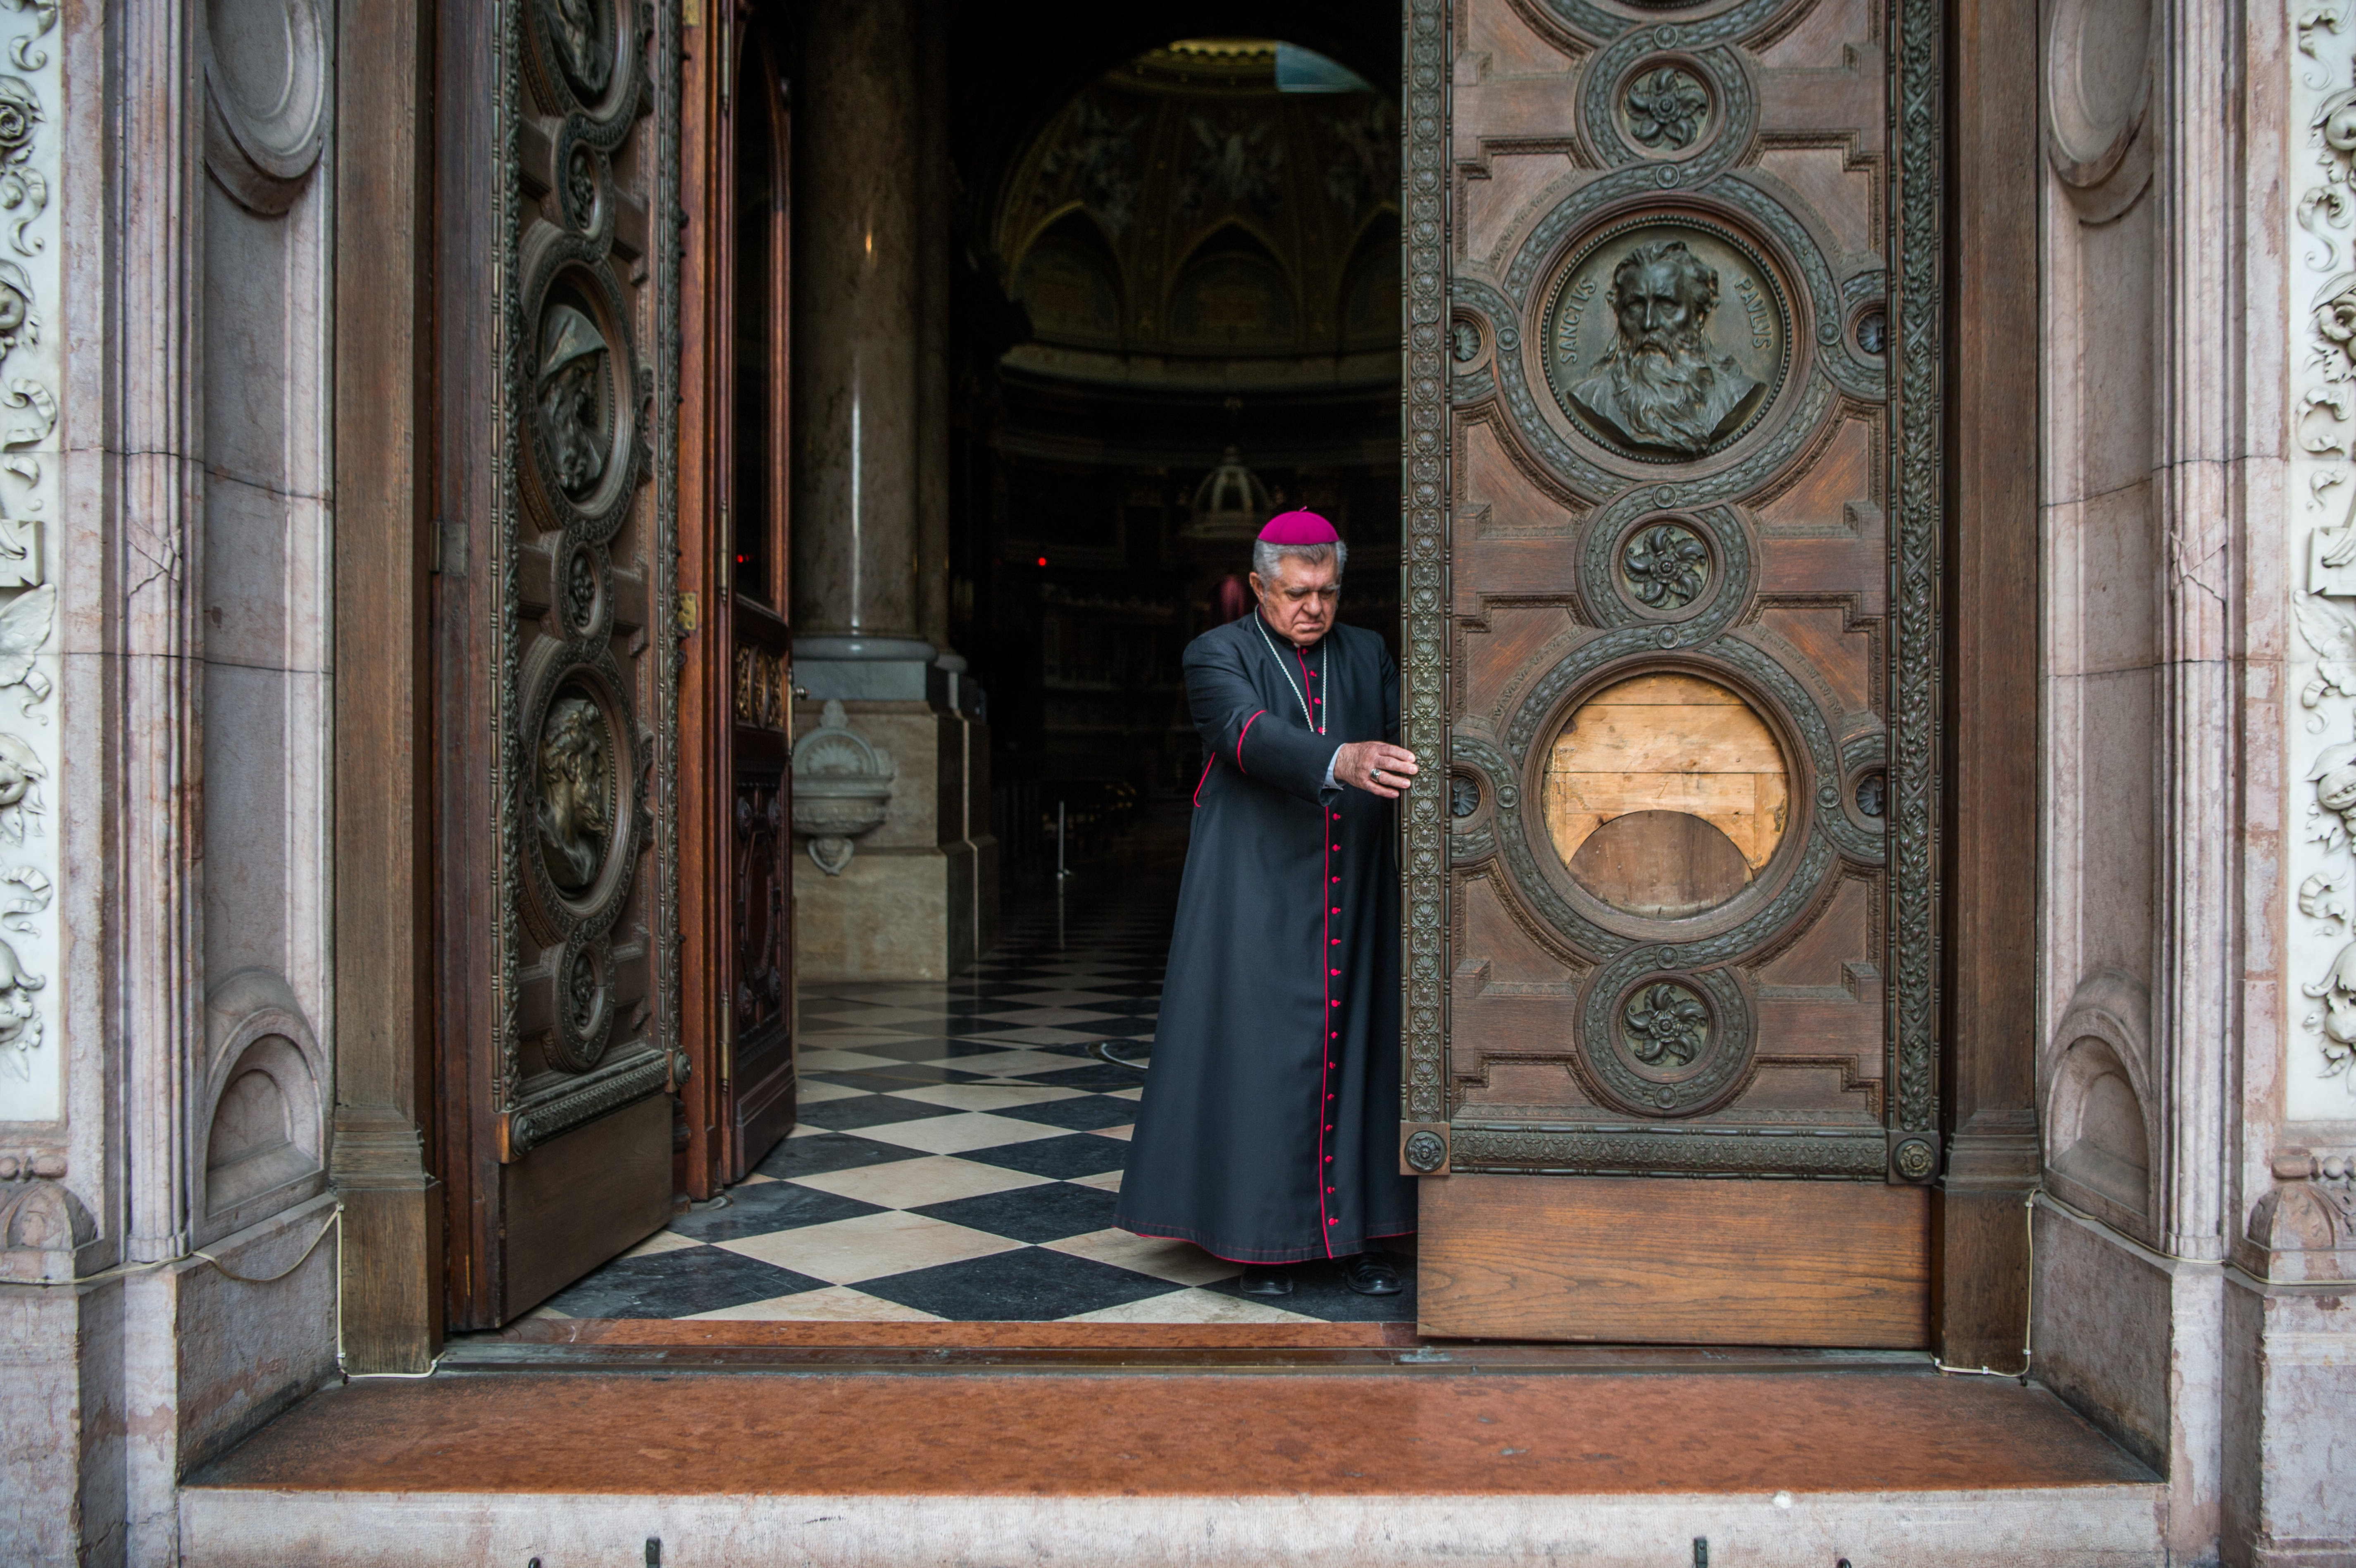 Snell György esztergom-budapesti segédpüspök, a Szent István-bazilika plébánosa becsukja a bazilika főkapuját 2020. március 21-én